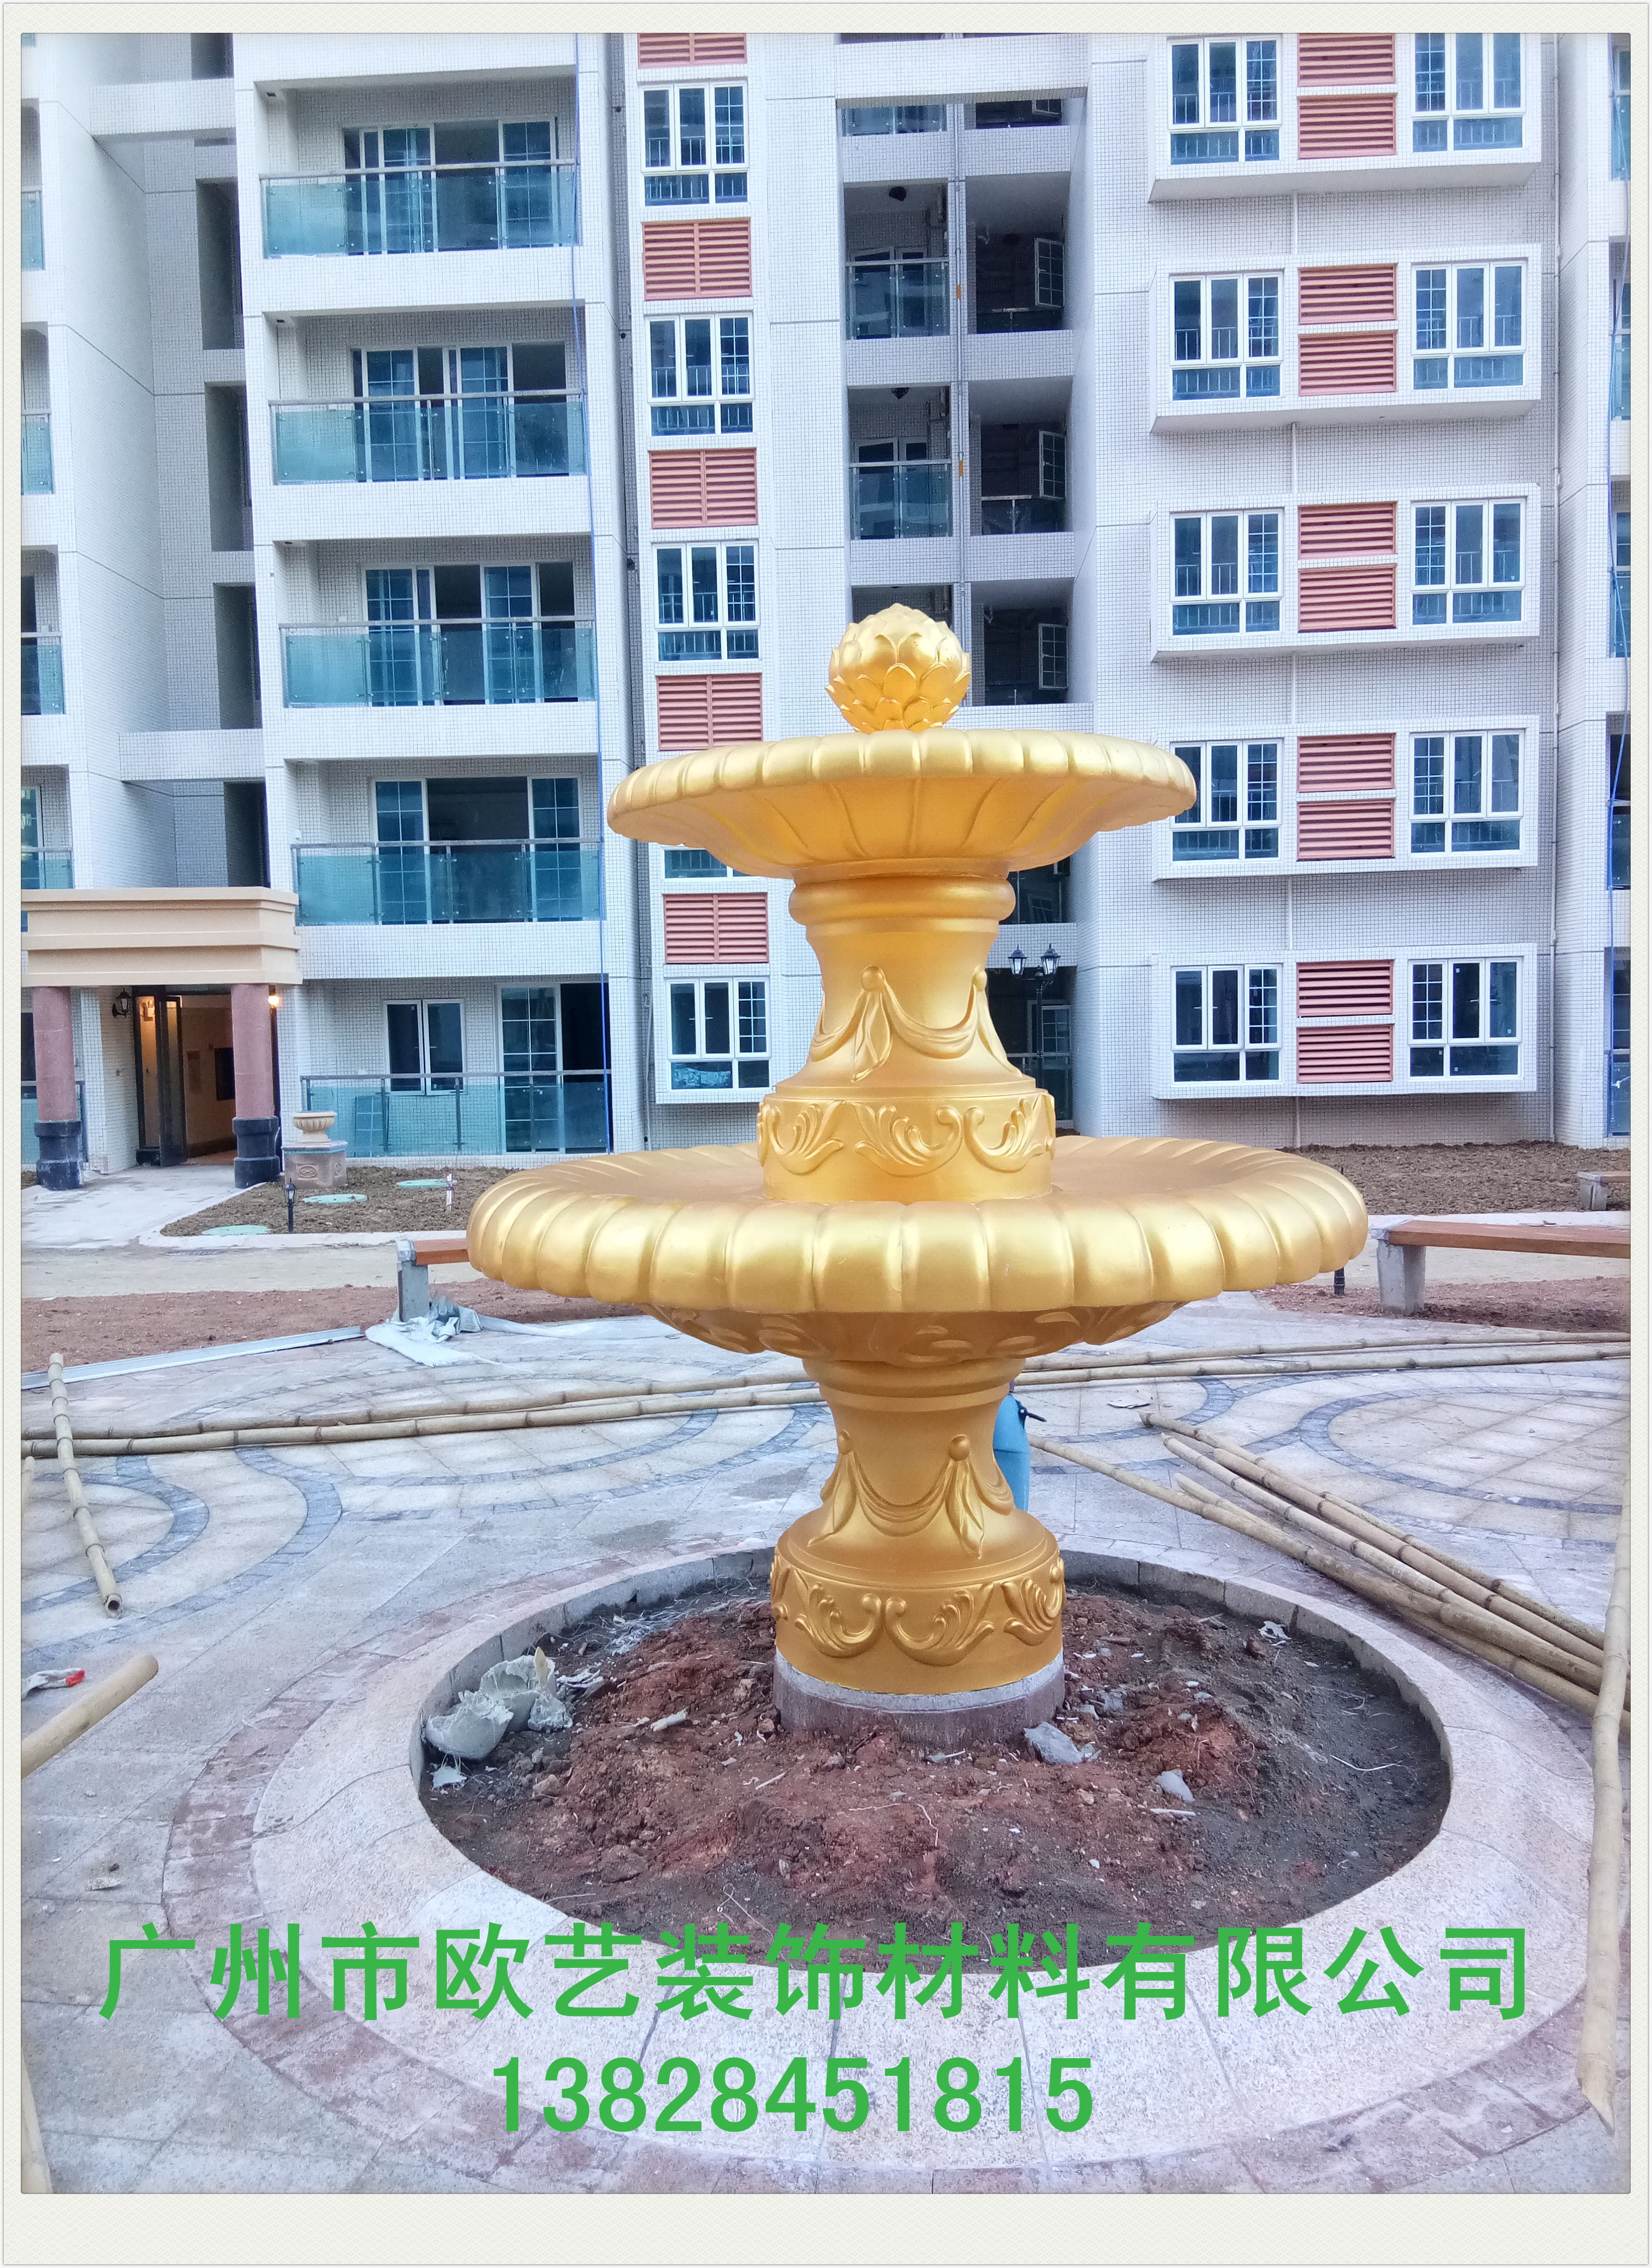 广州欧式喷泉雕塑设计公司|欧式喷泉雕塑设计电话|欧式喷泉雕塑设计咨询电话图片